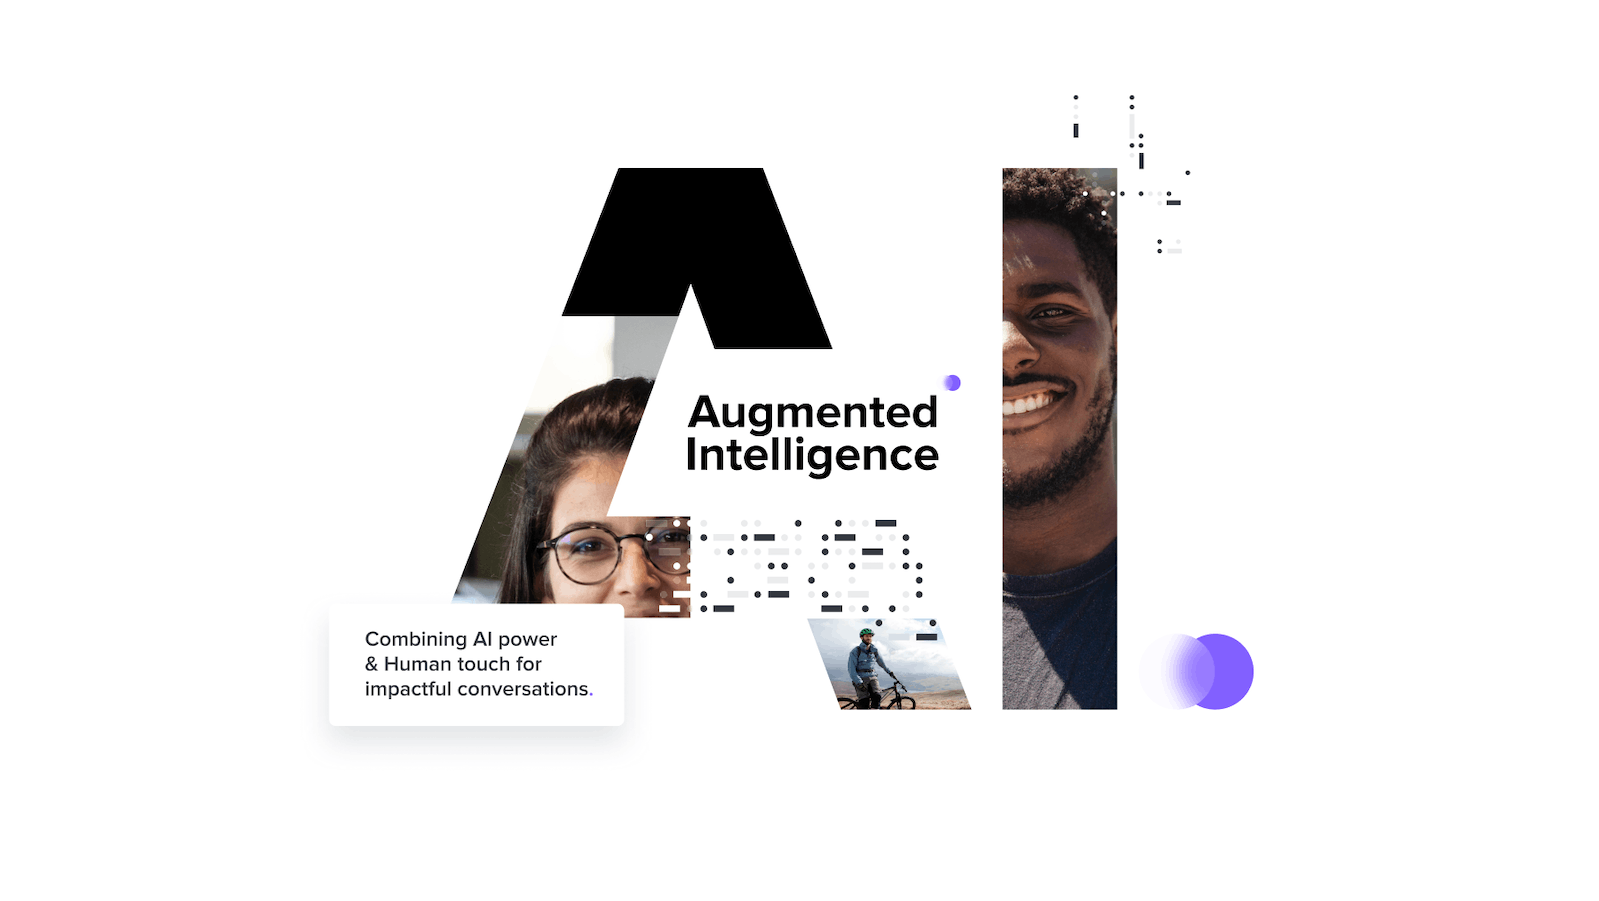 Read full post: iAdvize lance “Augmented Intelligence” : une solution de collaboration unique entre l’Homme et l’IA pour des conversations à fort impact